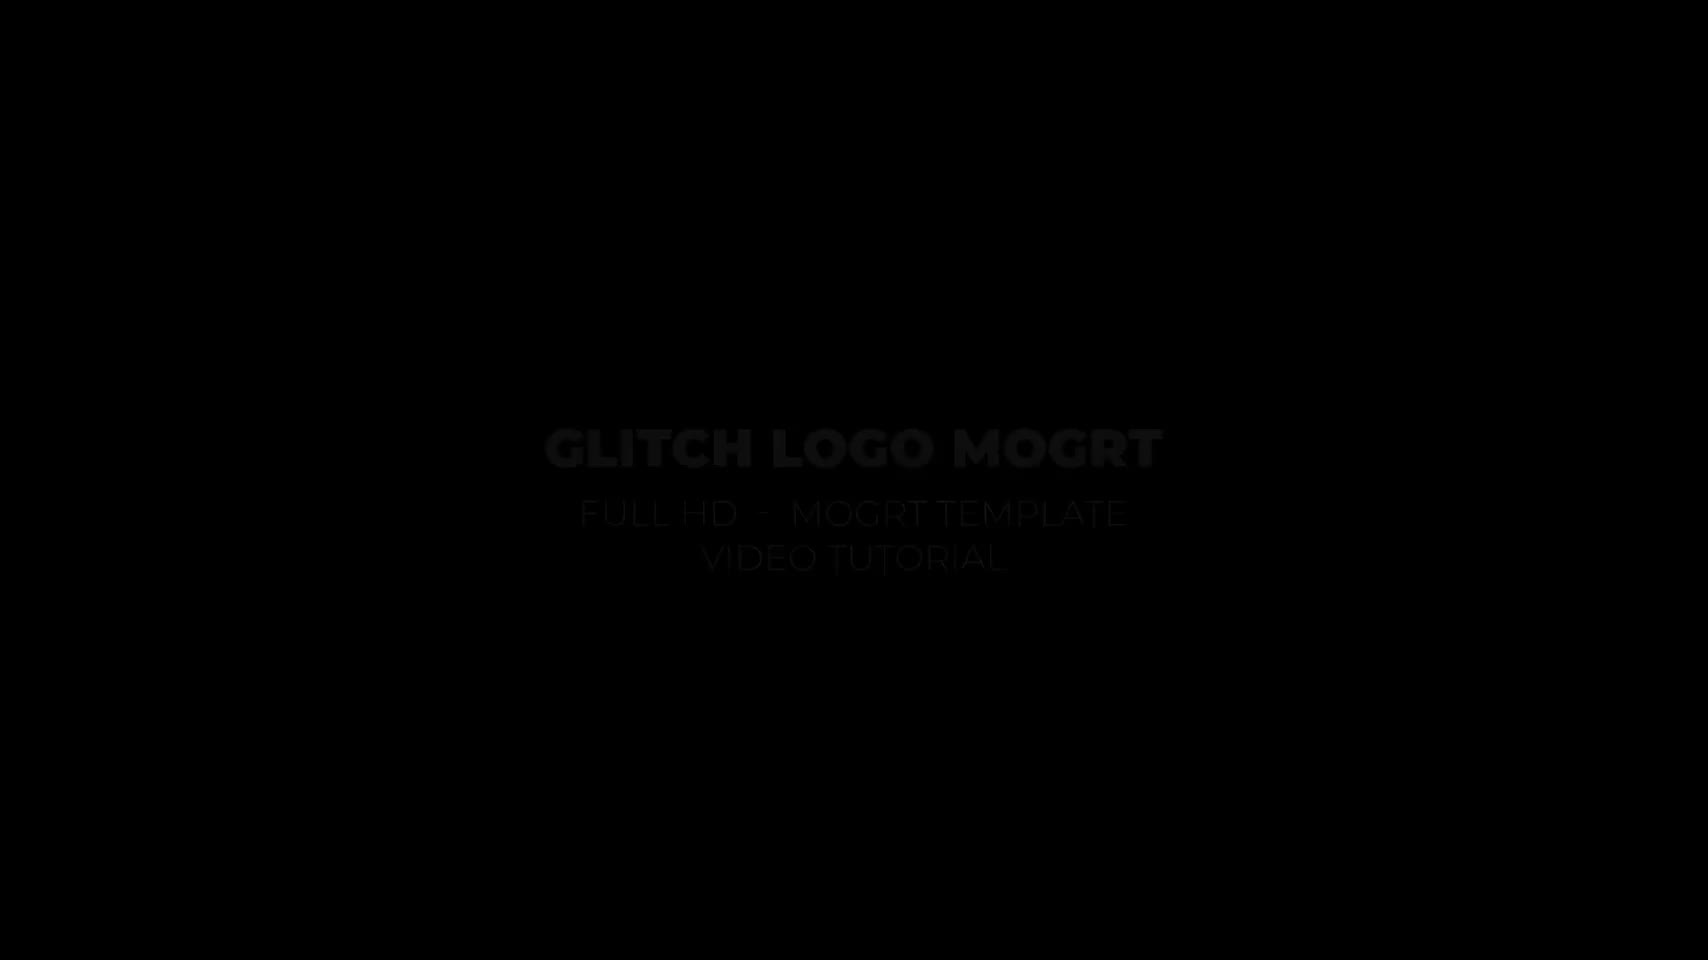 Glitch Logo Mogrt Videohive 24311897 Premiere Pro Image 3